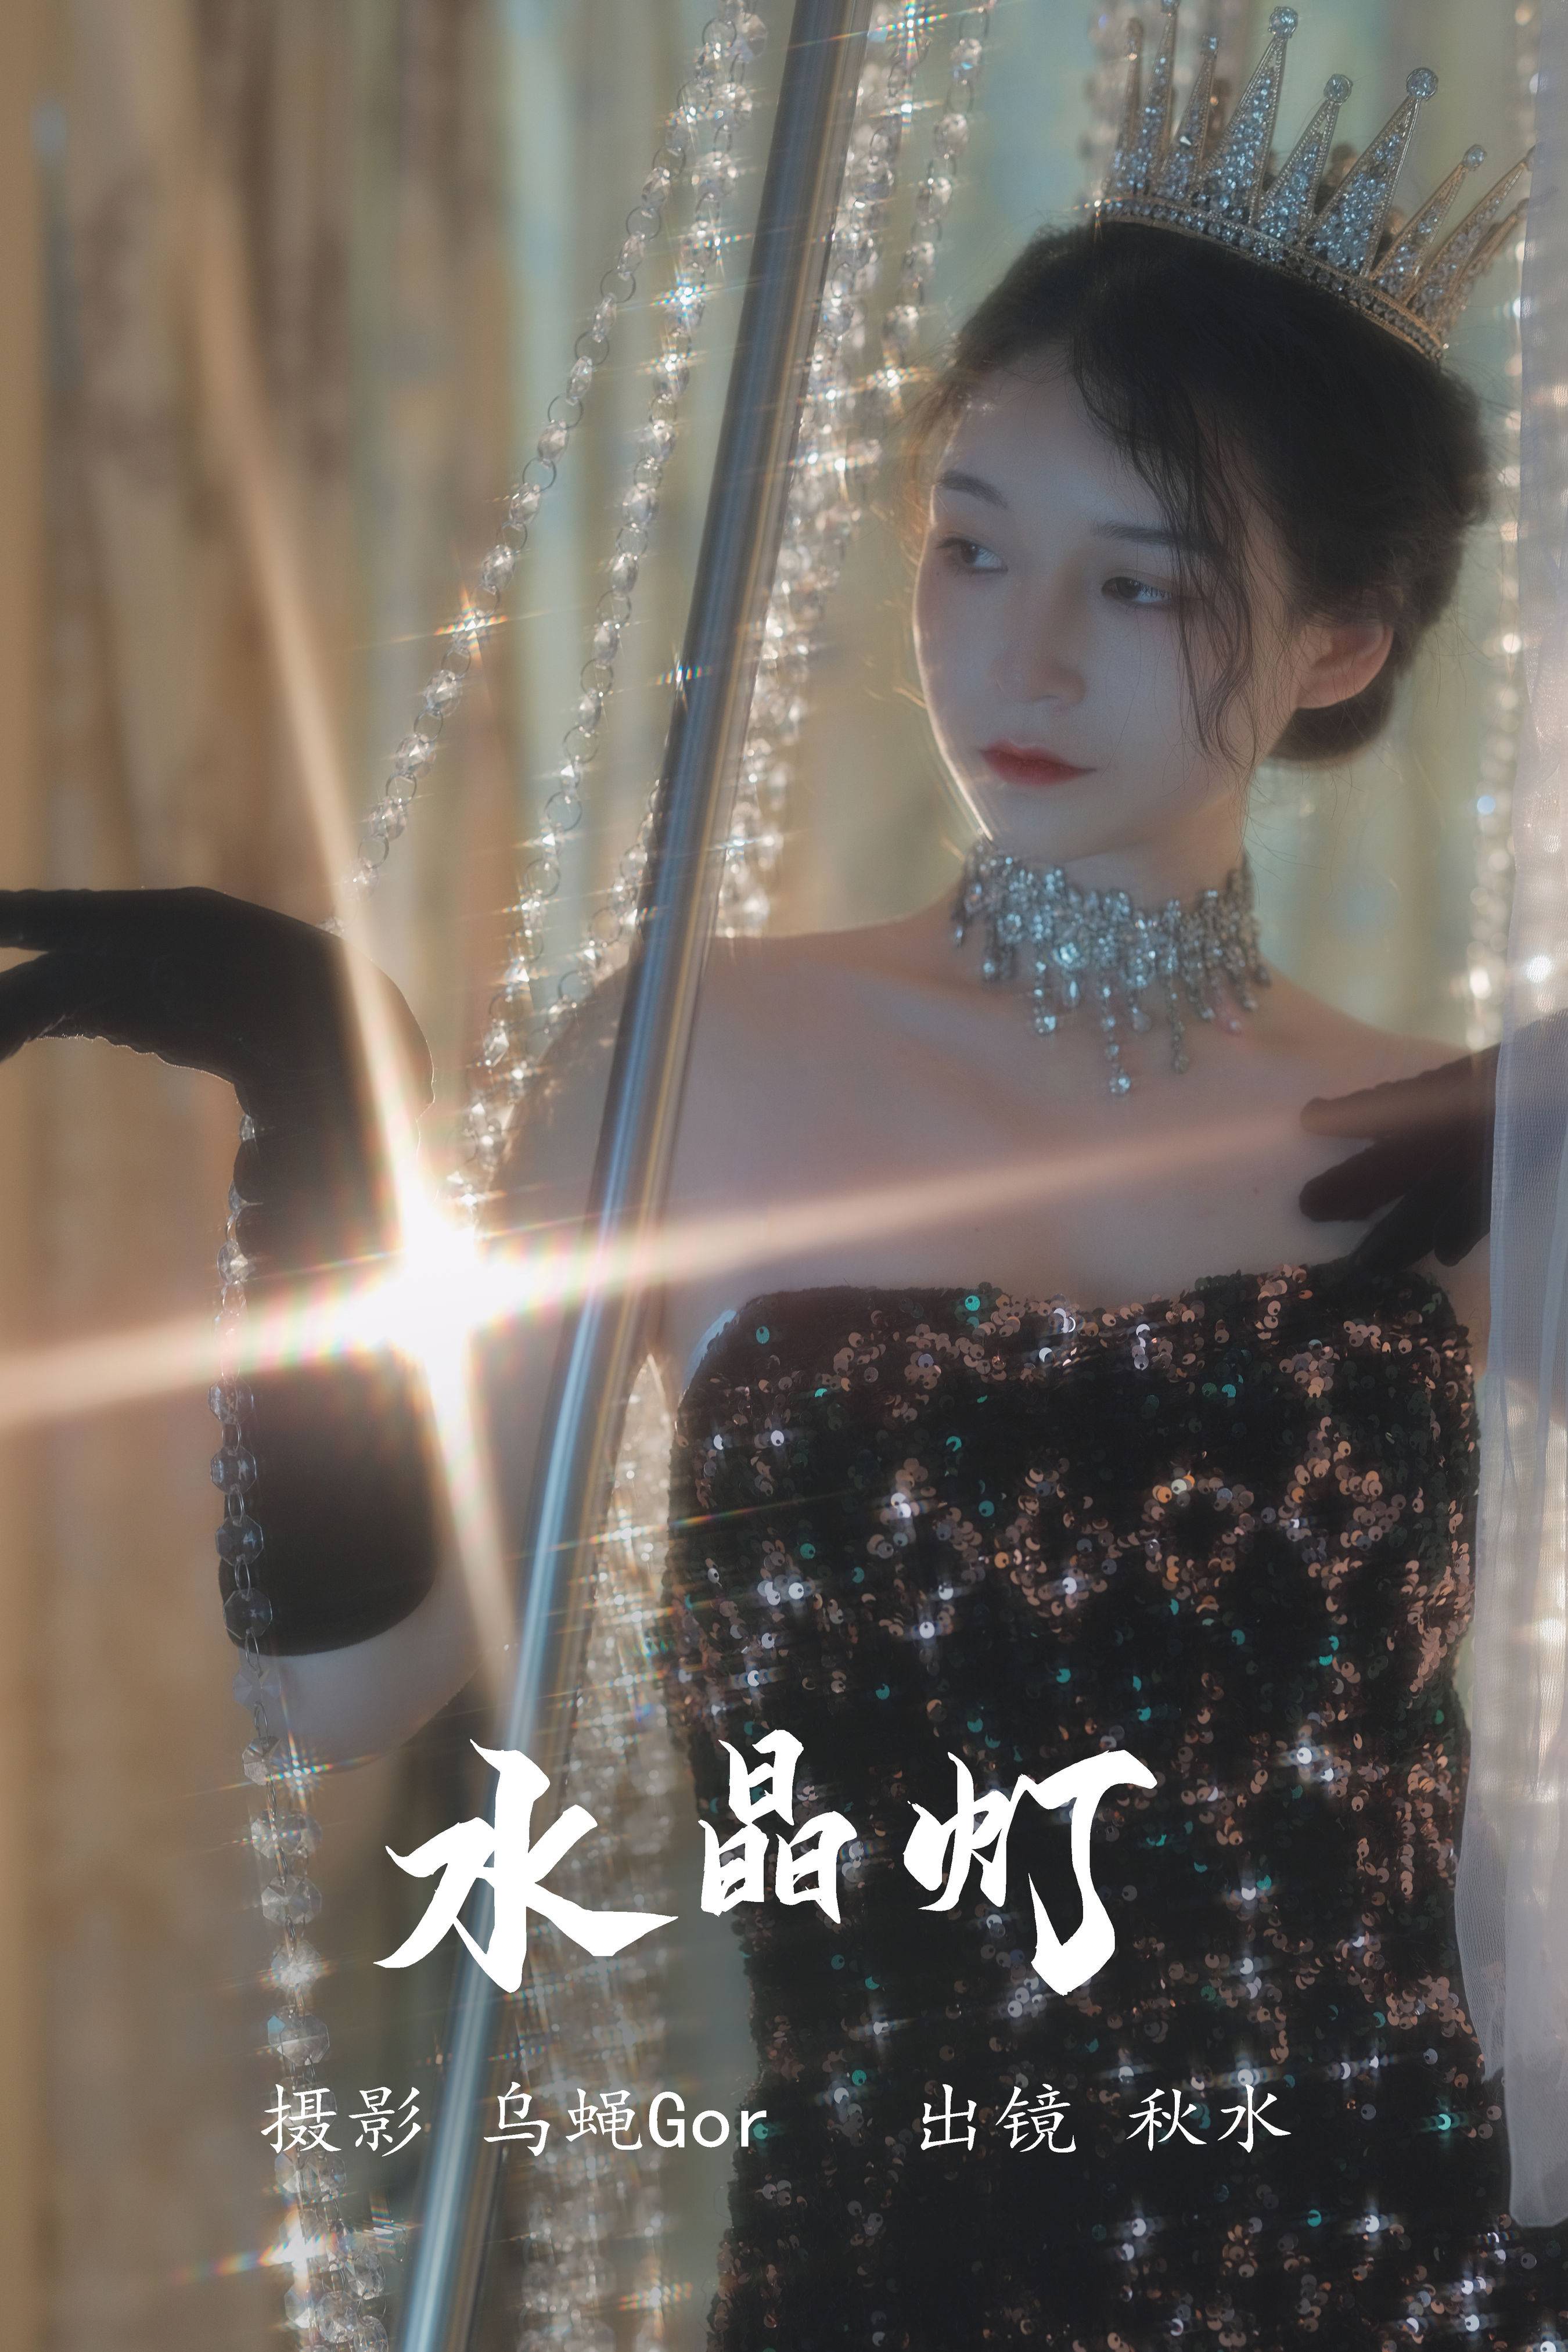 水晶灯 浪漫 时尚 人像 女郎 婚纱 摄影&YiTuYu艺图语-1